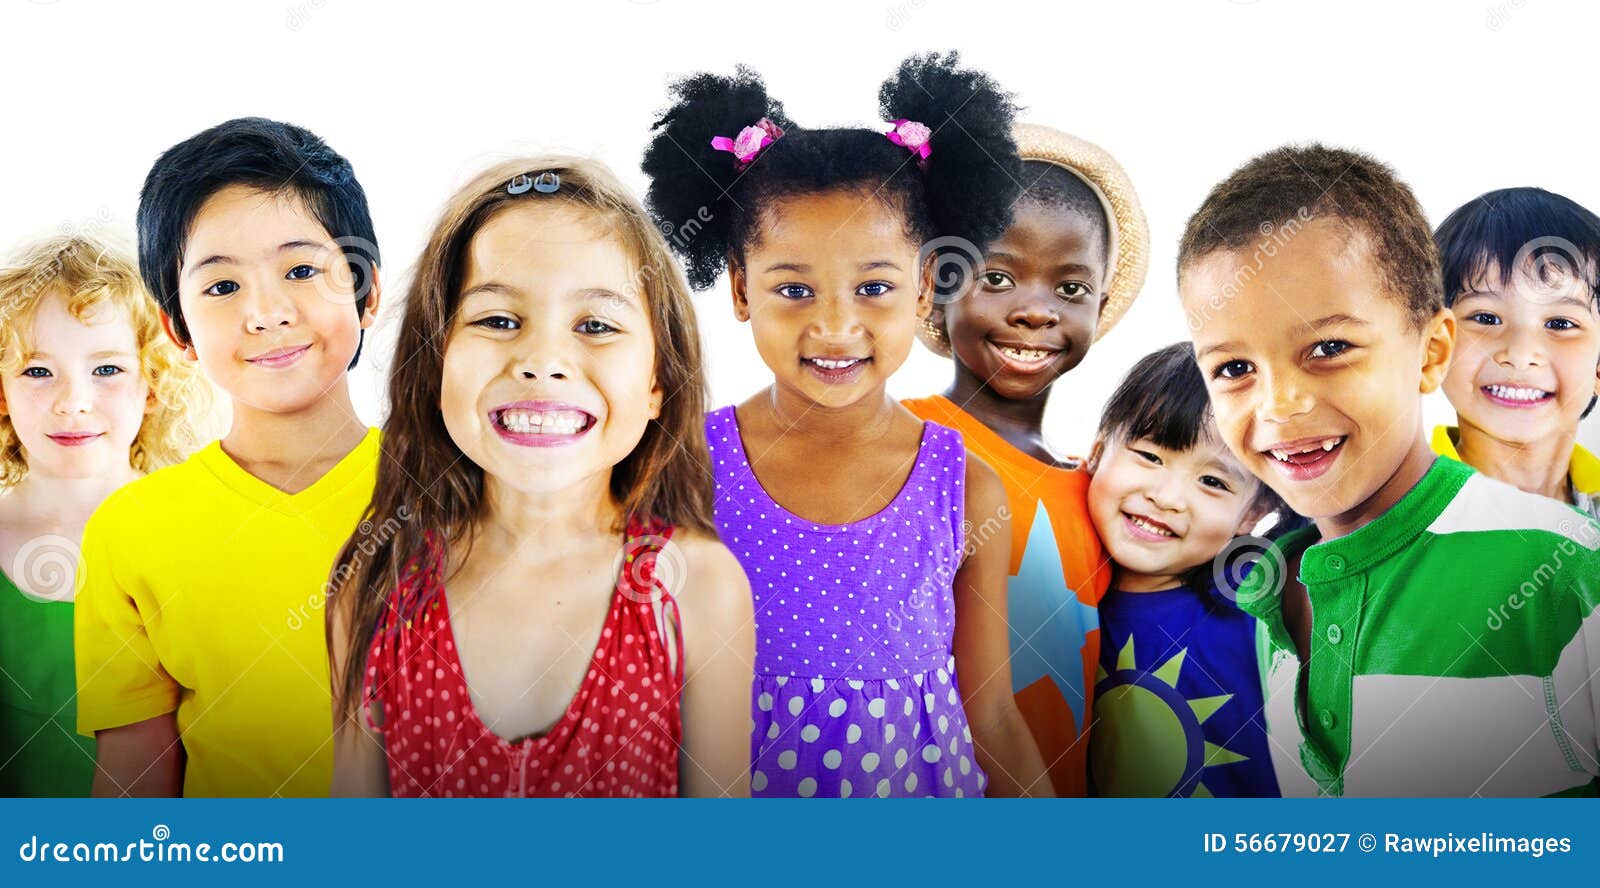 children kids diversity friendship happiness cheerful concept